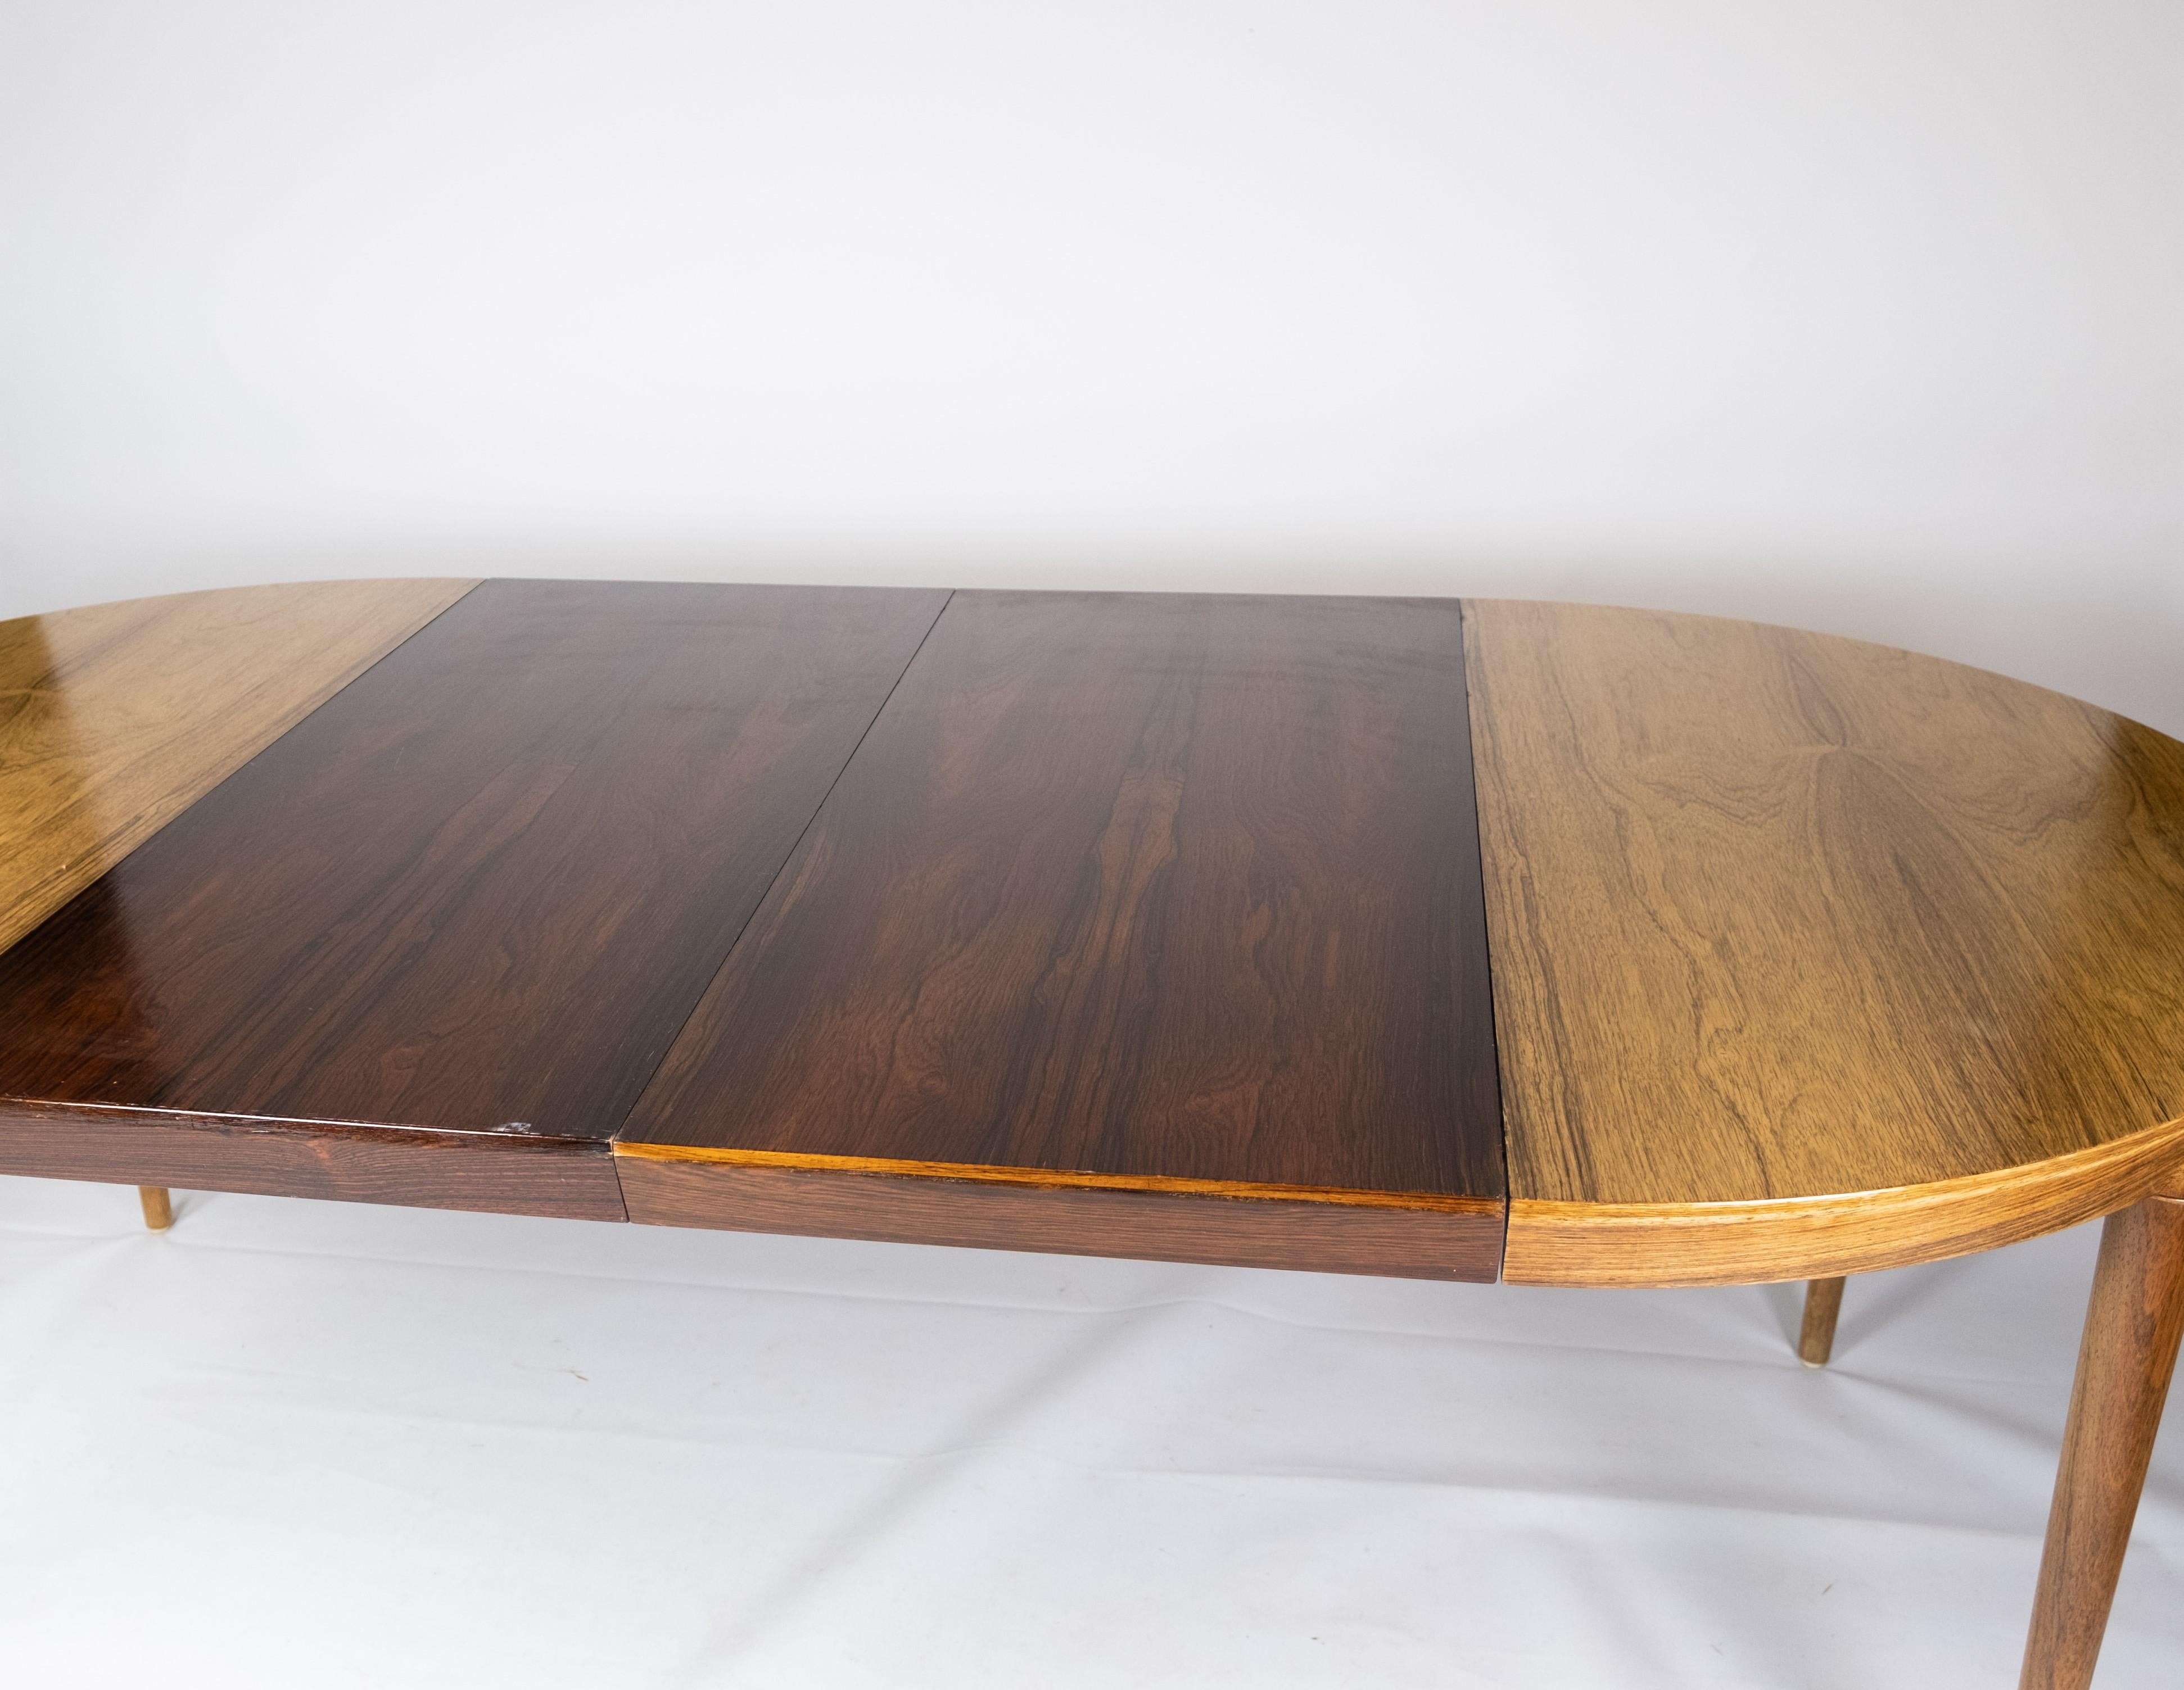 Cette table de salle à manger en bois de rose illustre le savoir-faire exquis du design danois des années 1960. Caractérisés par leurs tons riches et leurs lignes élégantes, les meubles en bois de rose de cette époque sont très recherchés pour leur